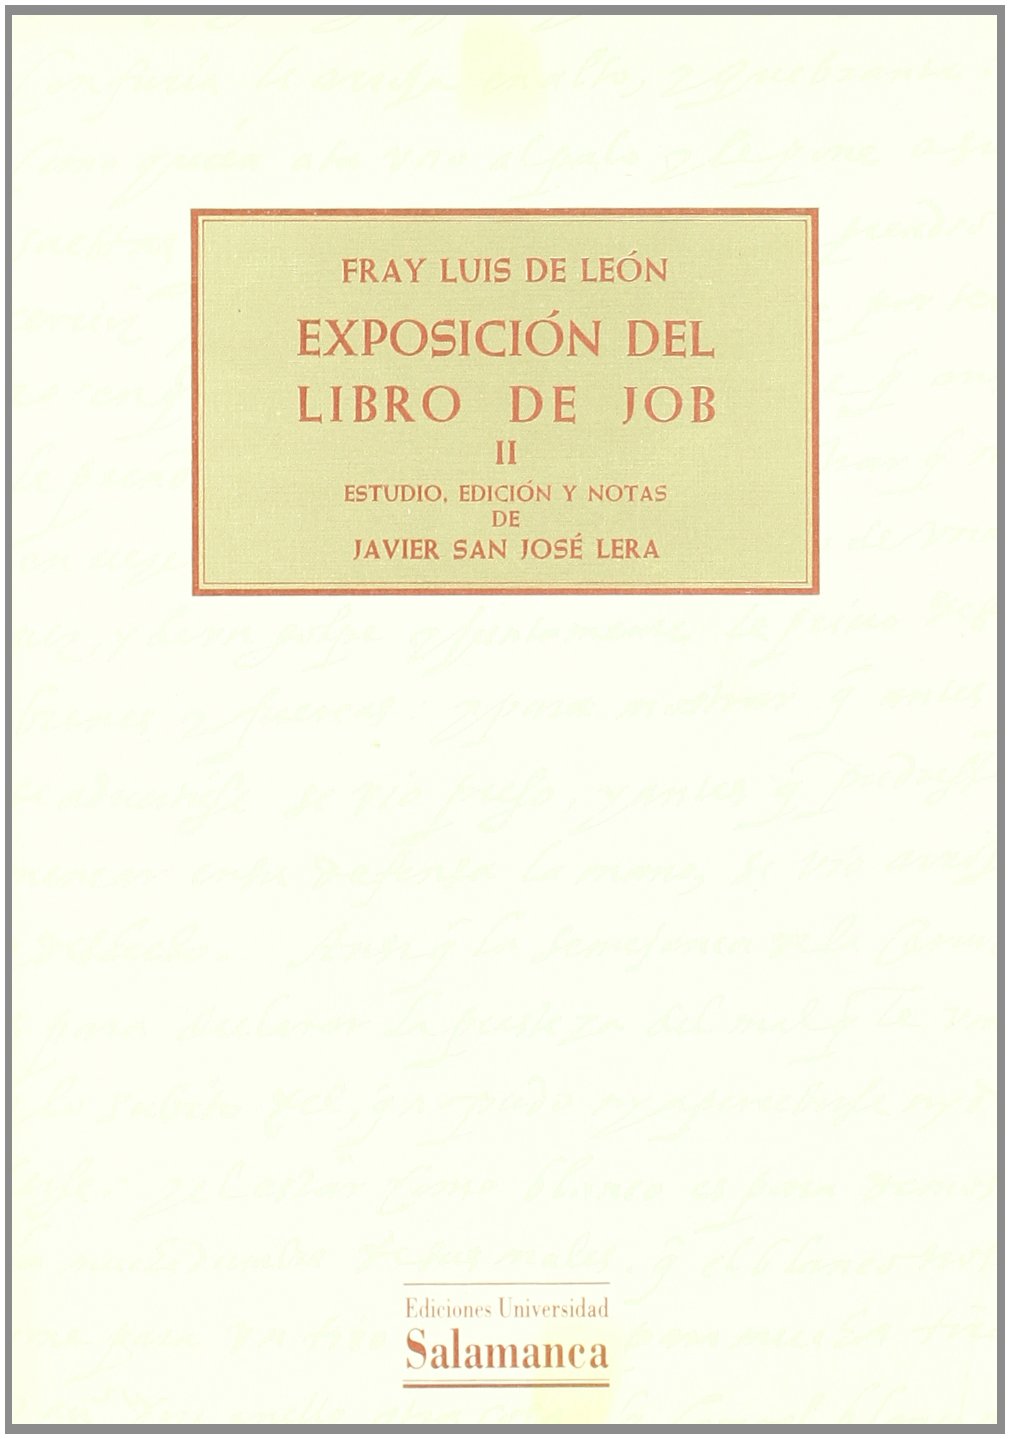 Imagen de portada del libro Exposición del Libro de Job